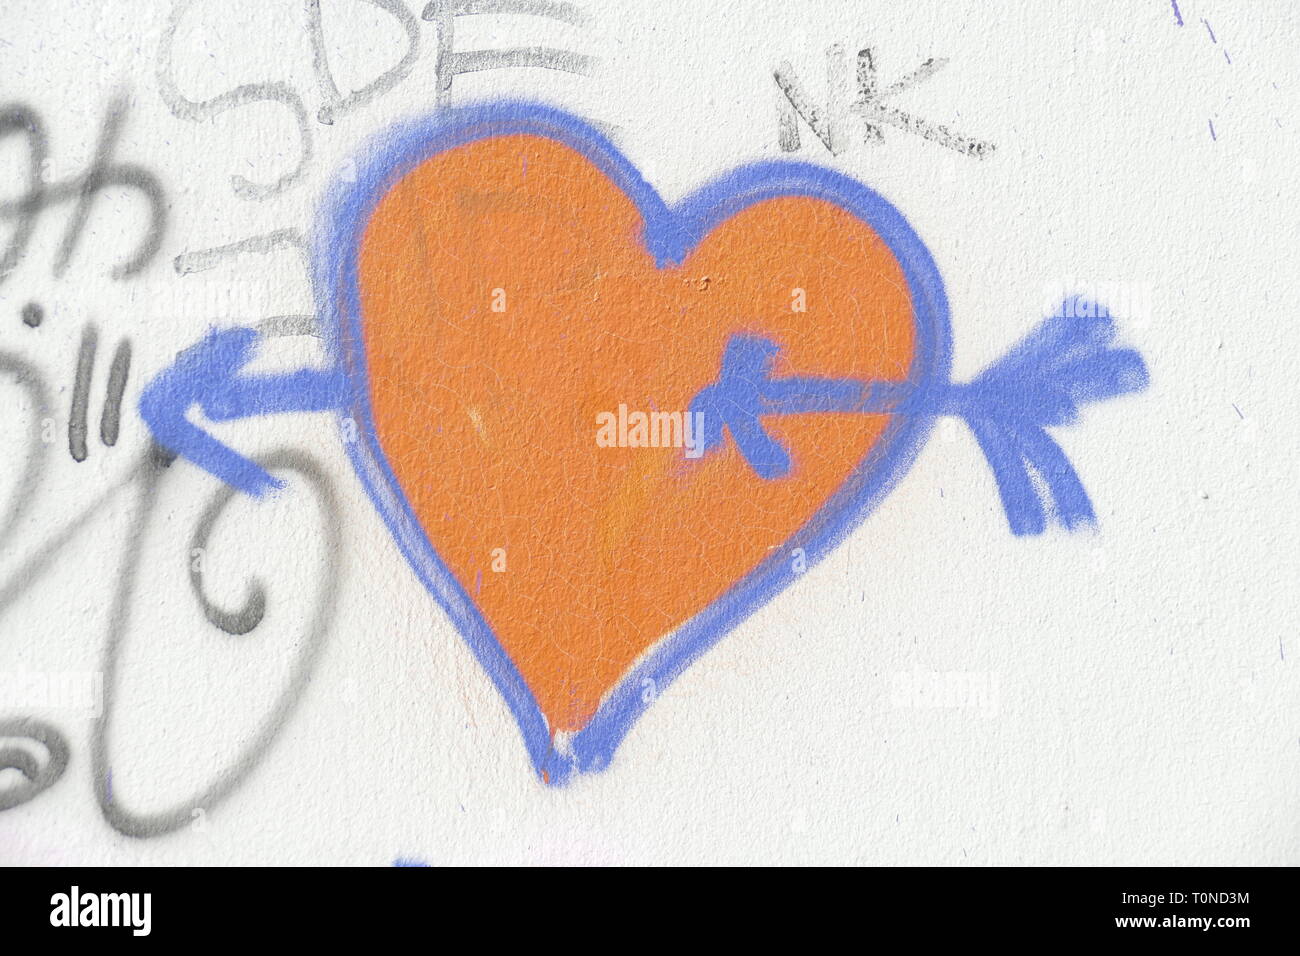 auf weisse Steinmauer gemaltes rotes Herz mit Pfeil, Symbolbild Verliebtsein Stock Photo